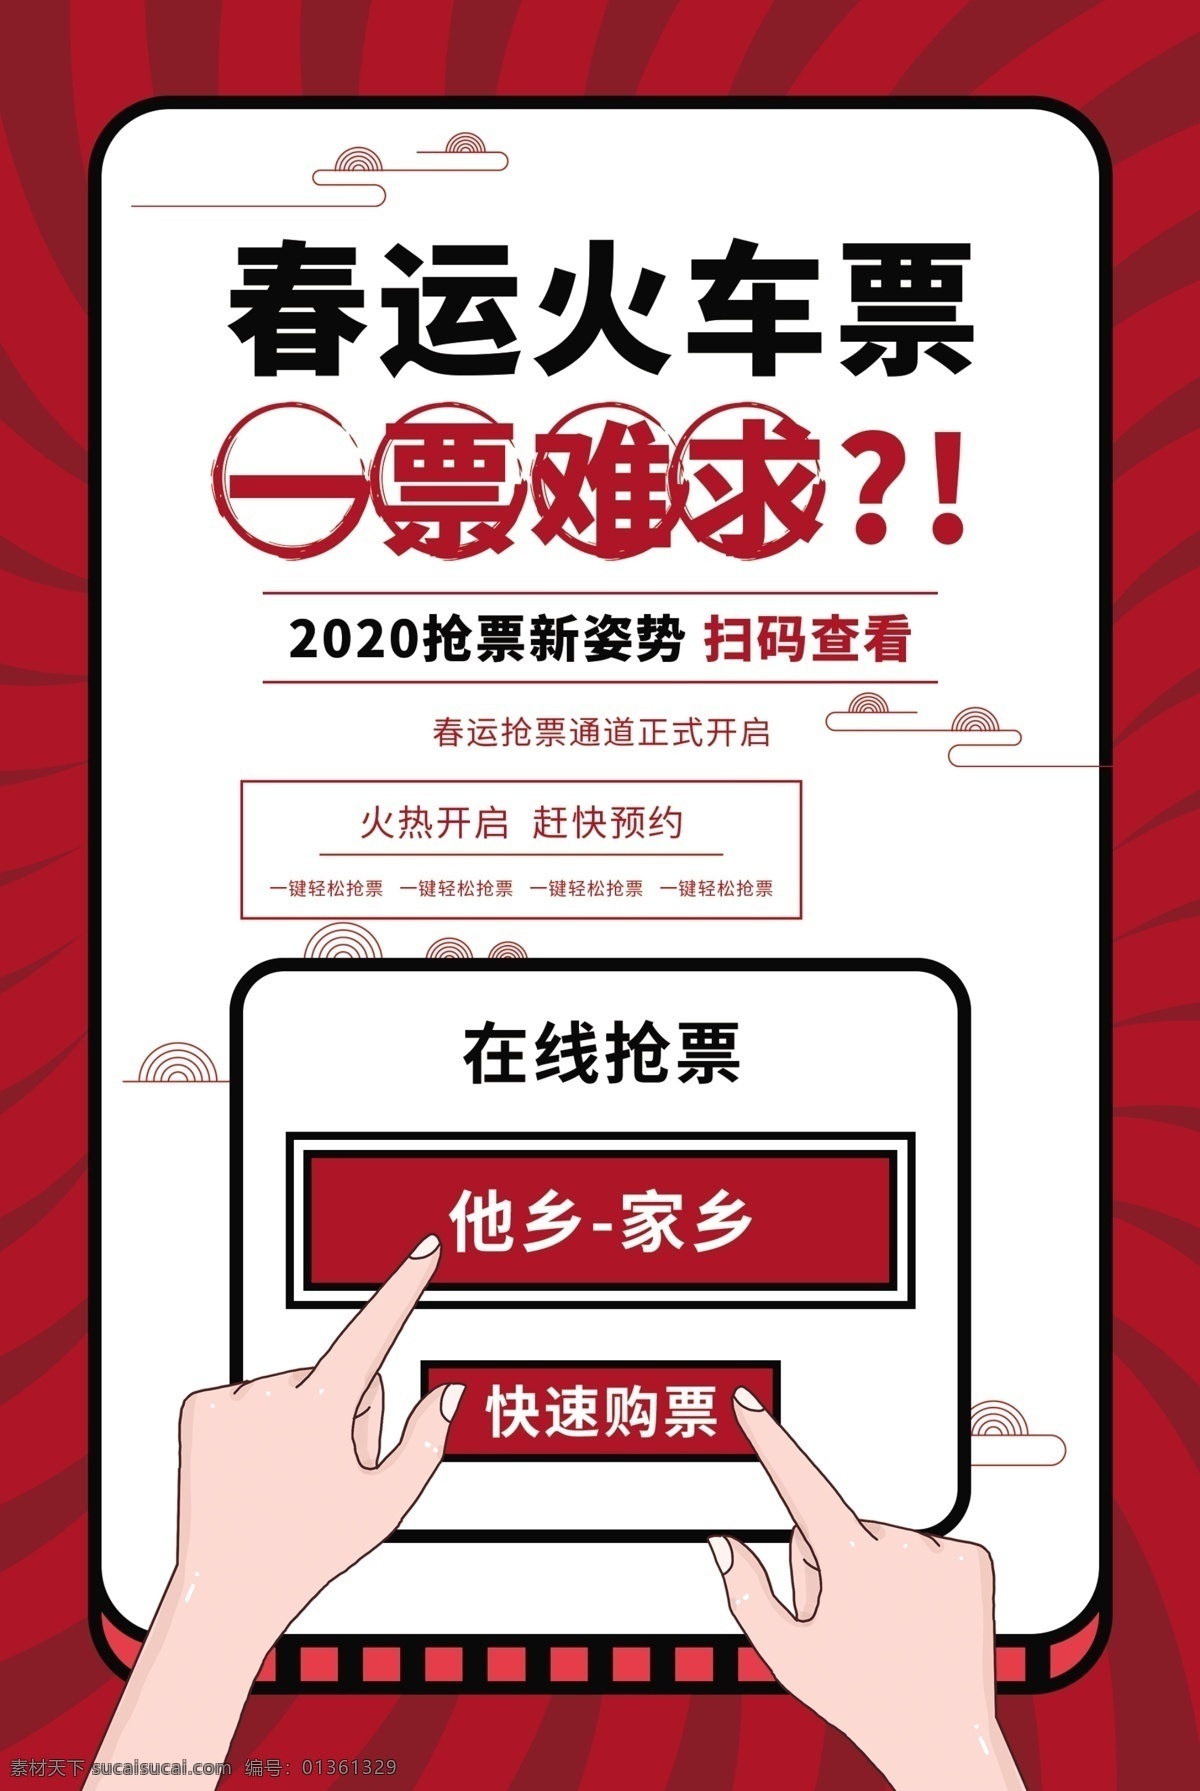 春运 火车票 抢购 活动 宣传海报 素材图片 春运火车票 宣传 海报